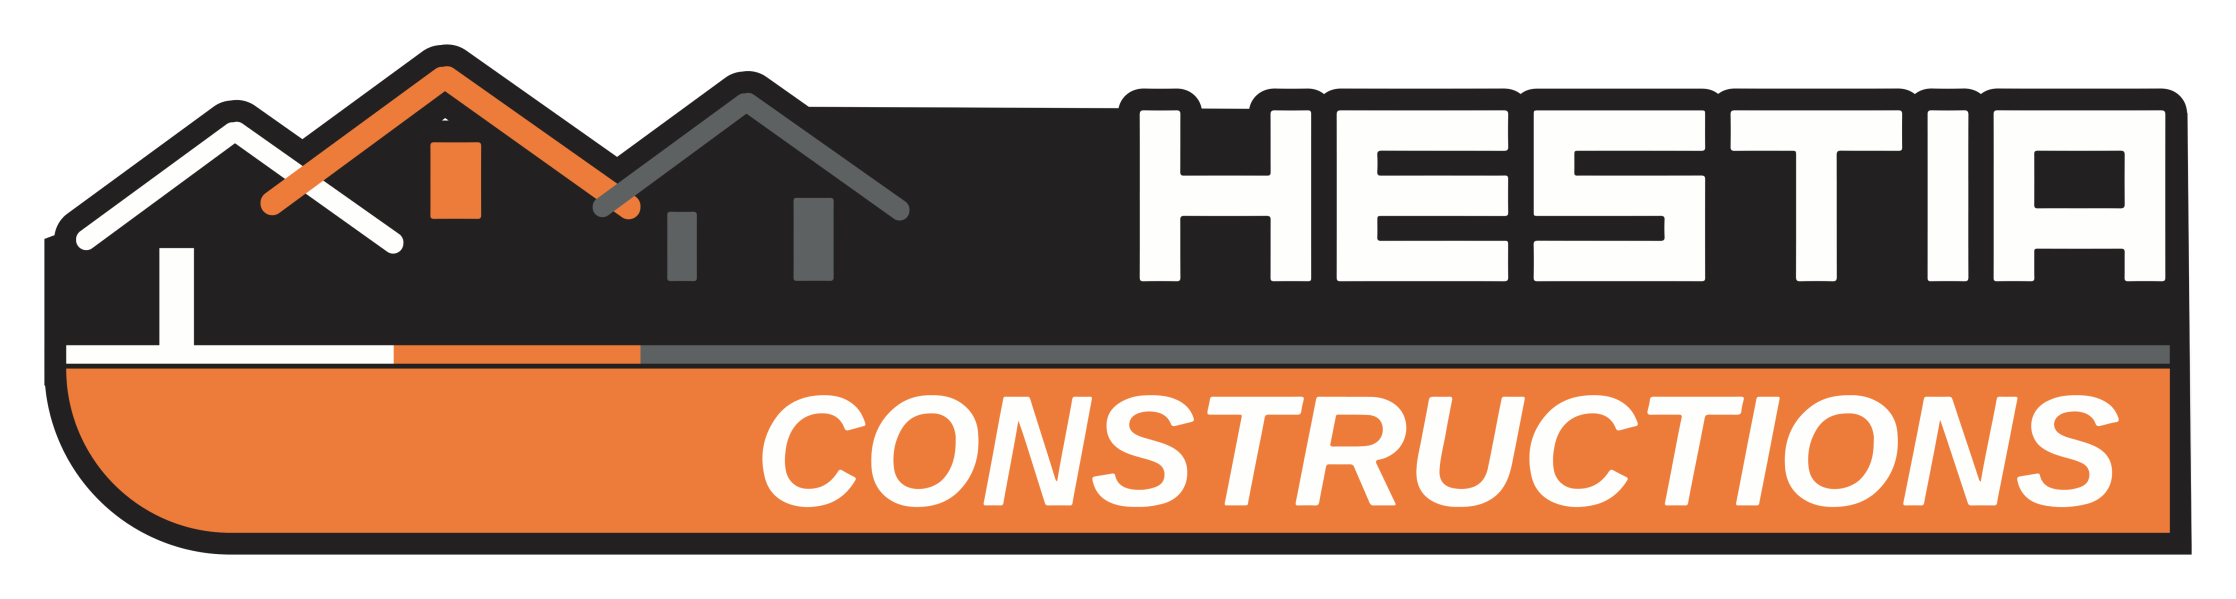 HESTIA CONSTRUCTION - VENIR NOUS VOIR